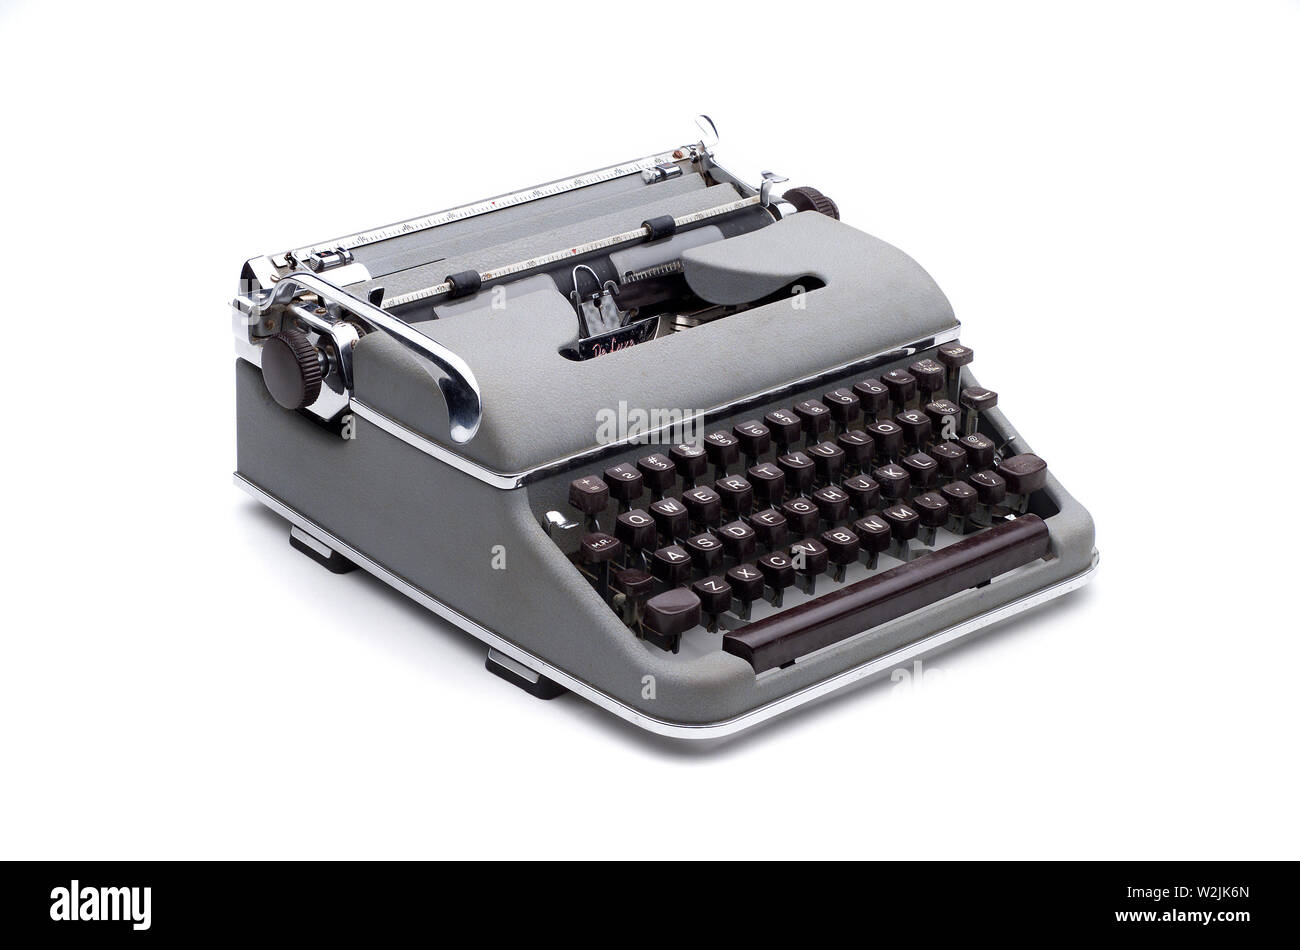 Speichern Download Vorschau Vintage top Qualität Westdeutschen tragbare Schreibmaschine aus den 50er und 60er mit Freistellungspfad Stockfoto